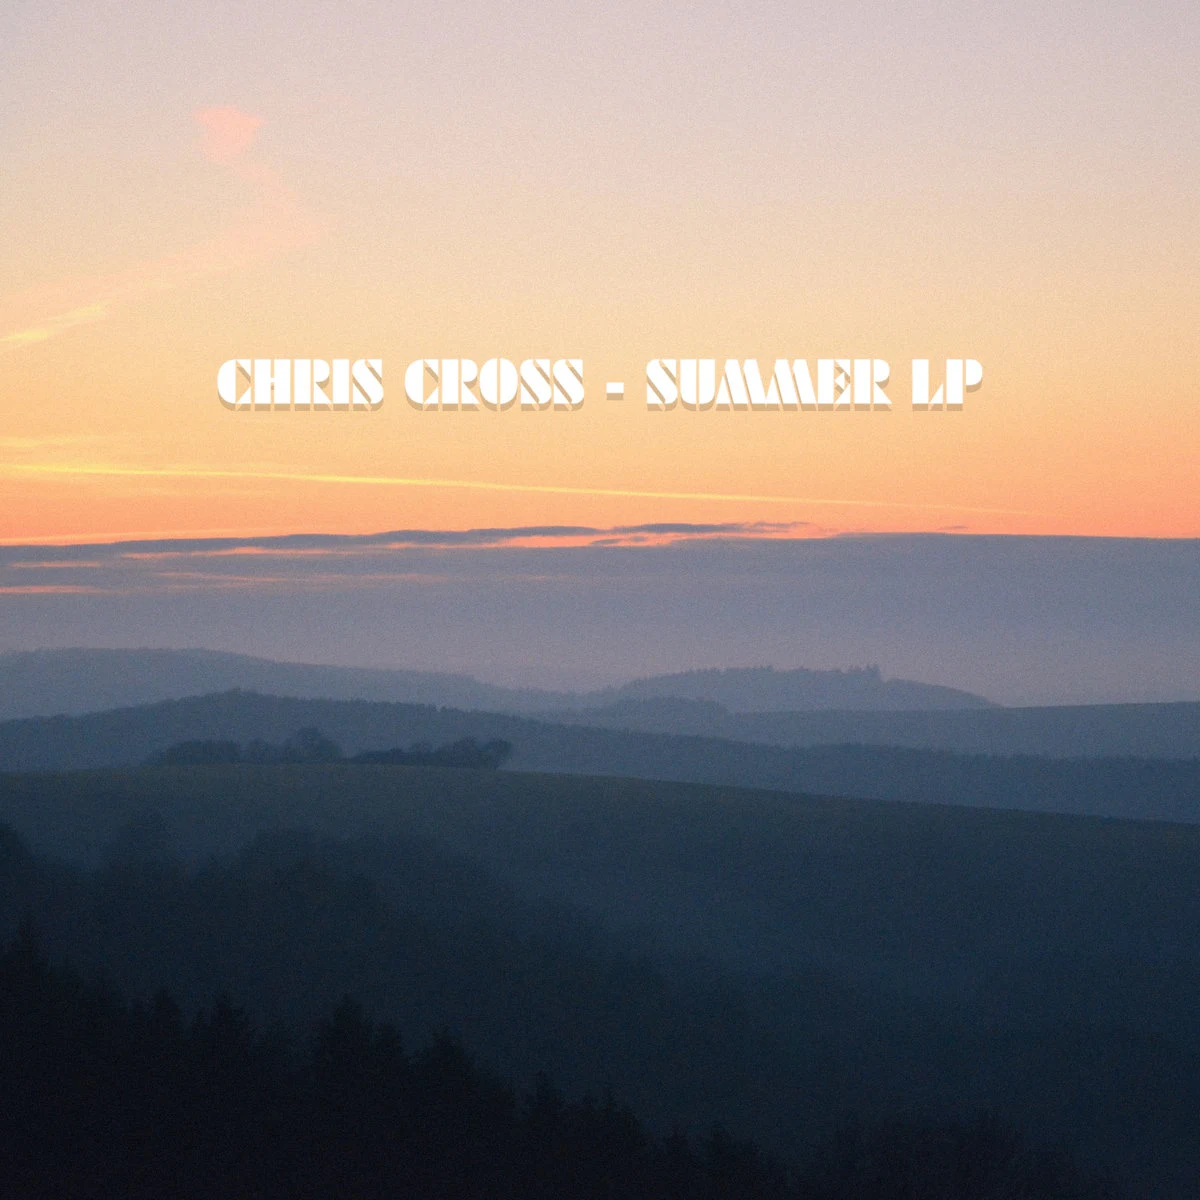 Die Summer LP von Chris Cross im Full Album Stream | Summervibes Galore 